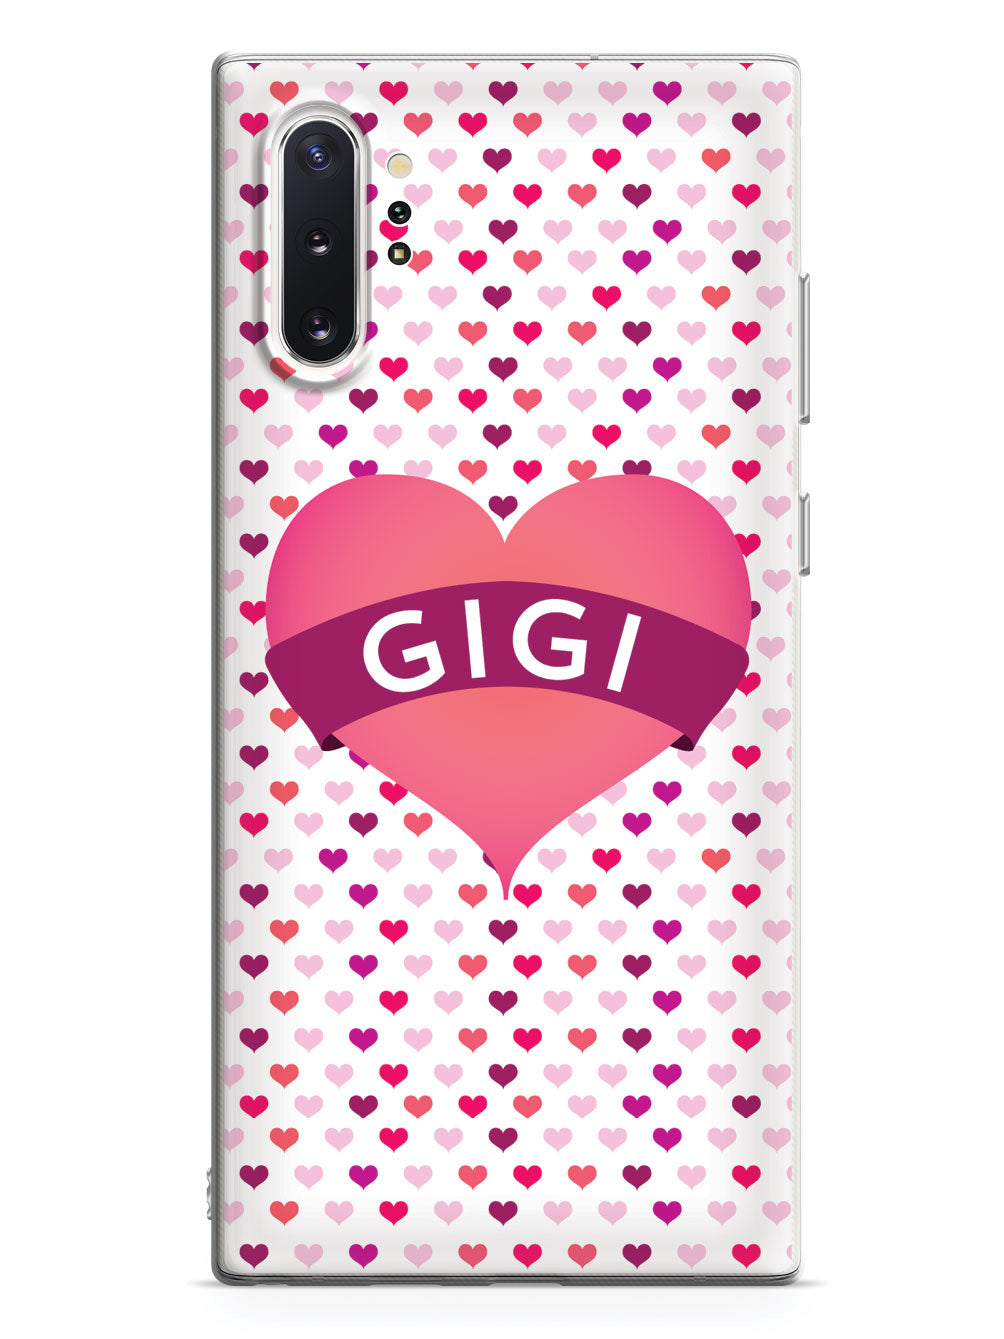 Gigi Heart for Grandma Case